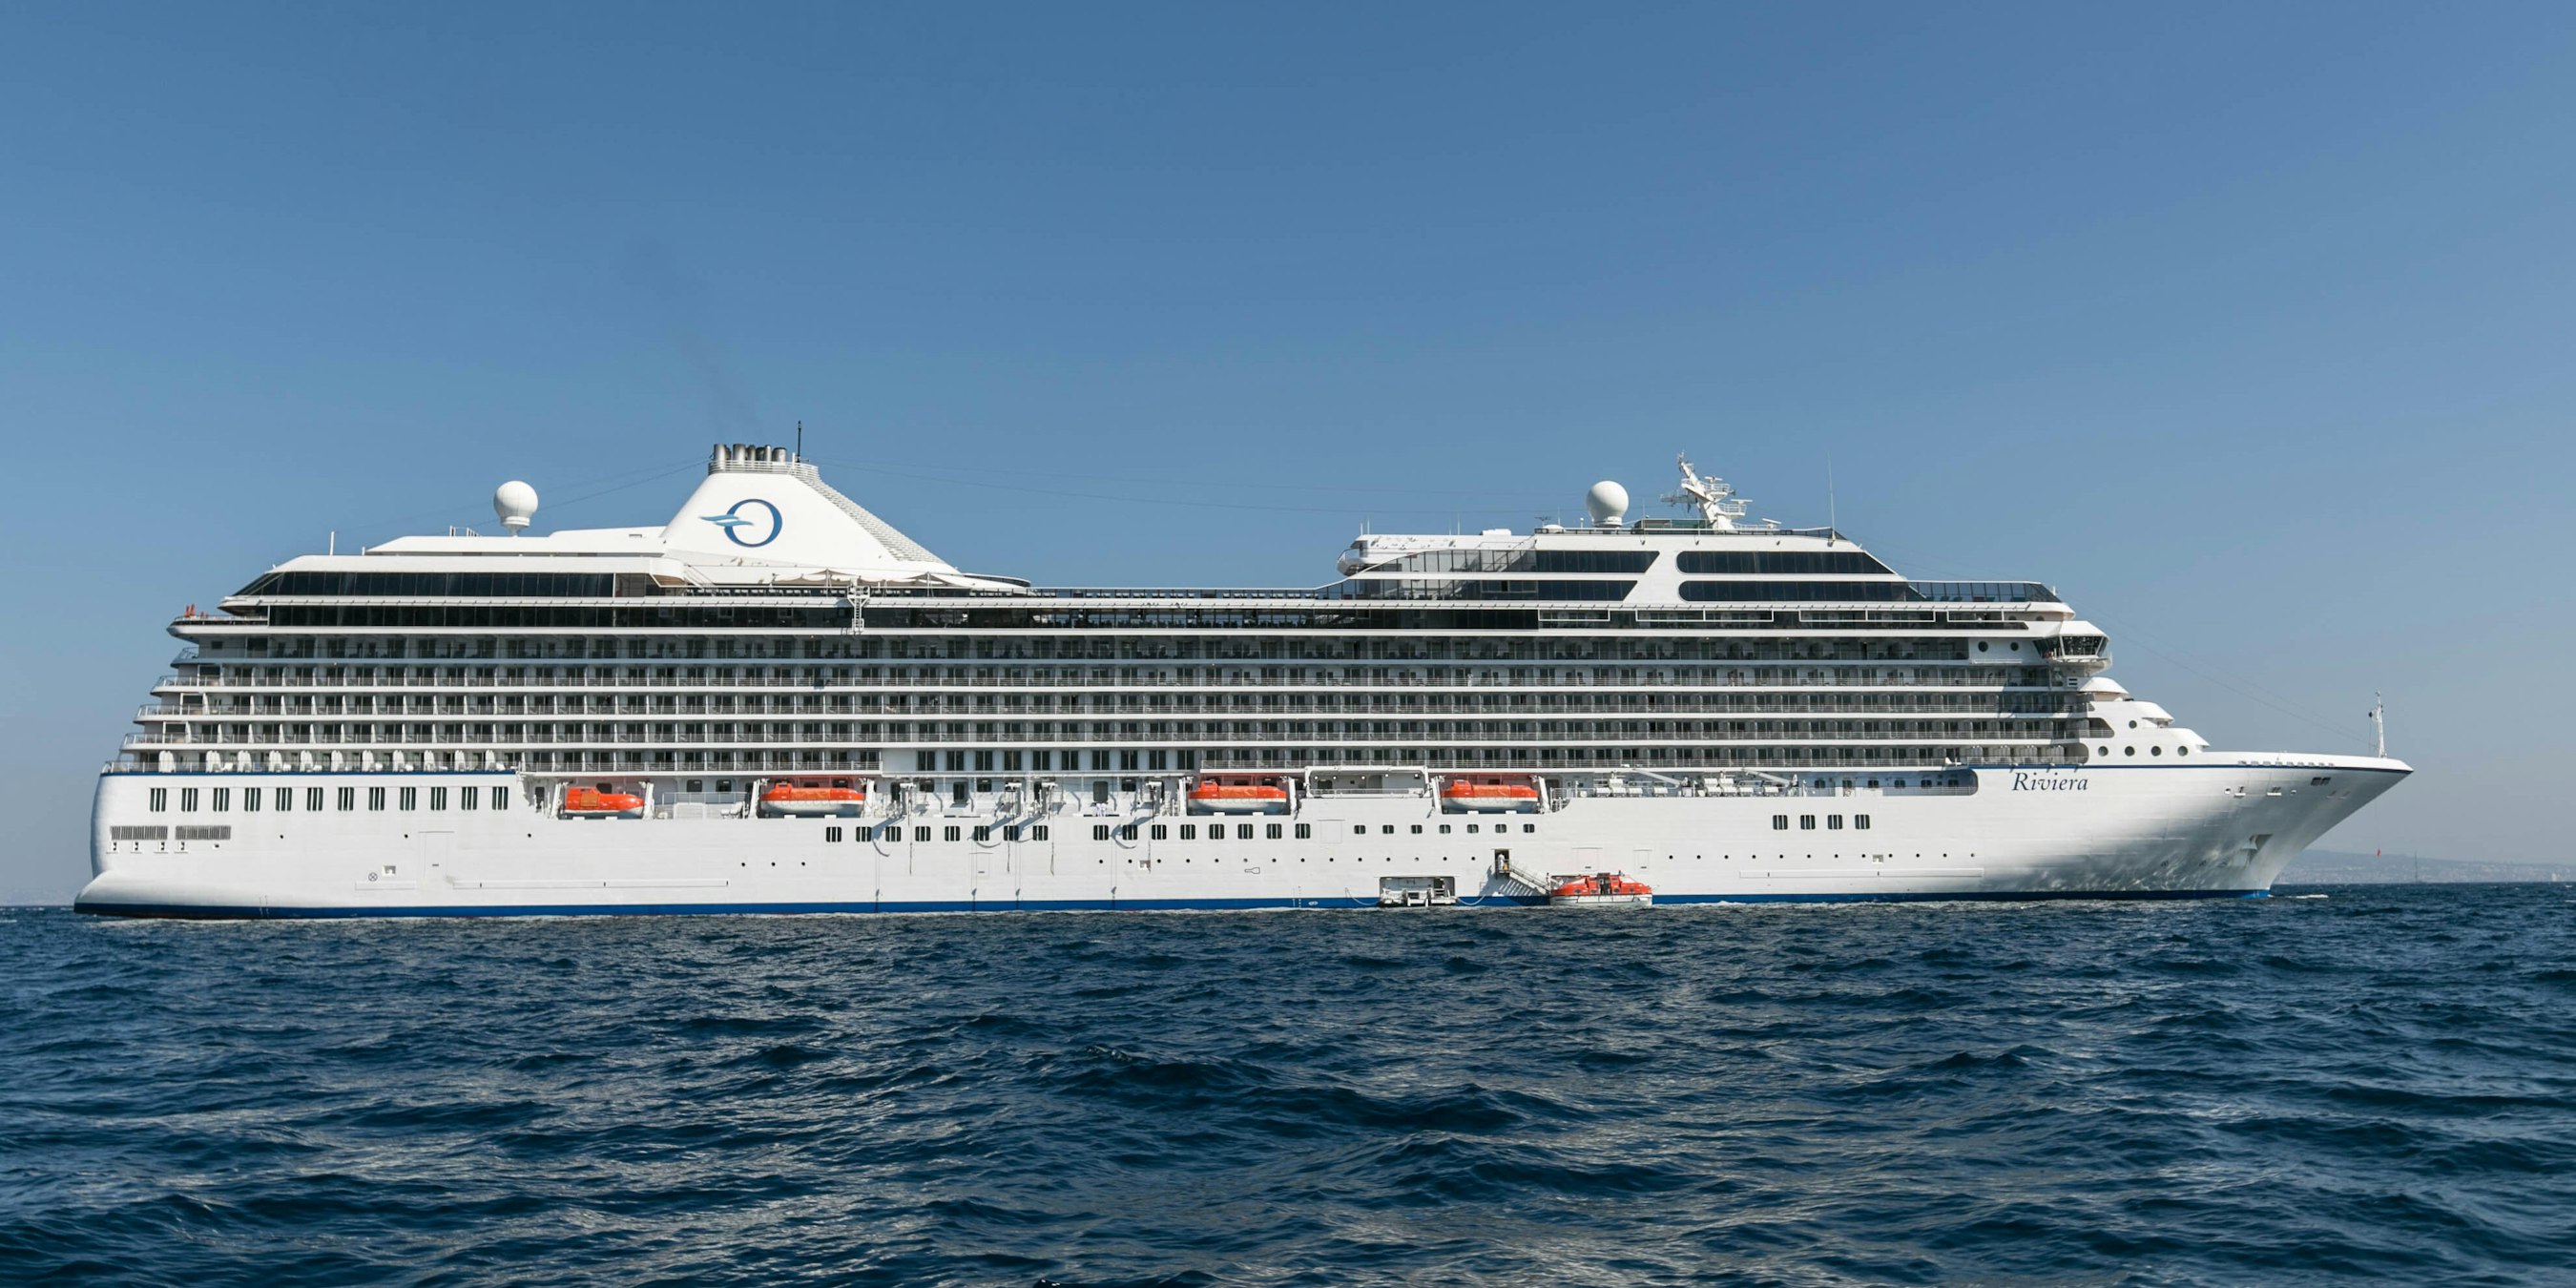 oceania cruises club membership